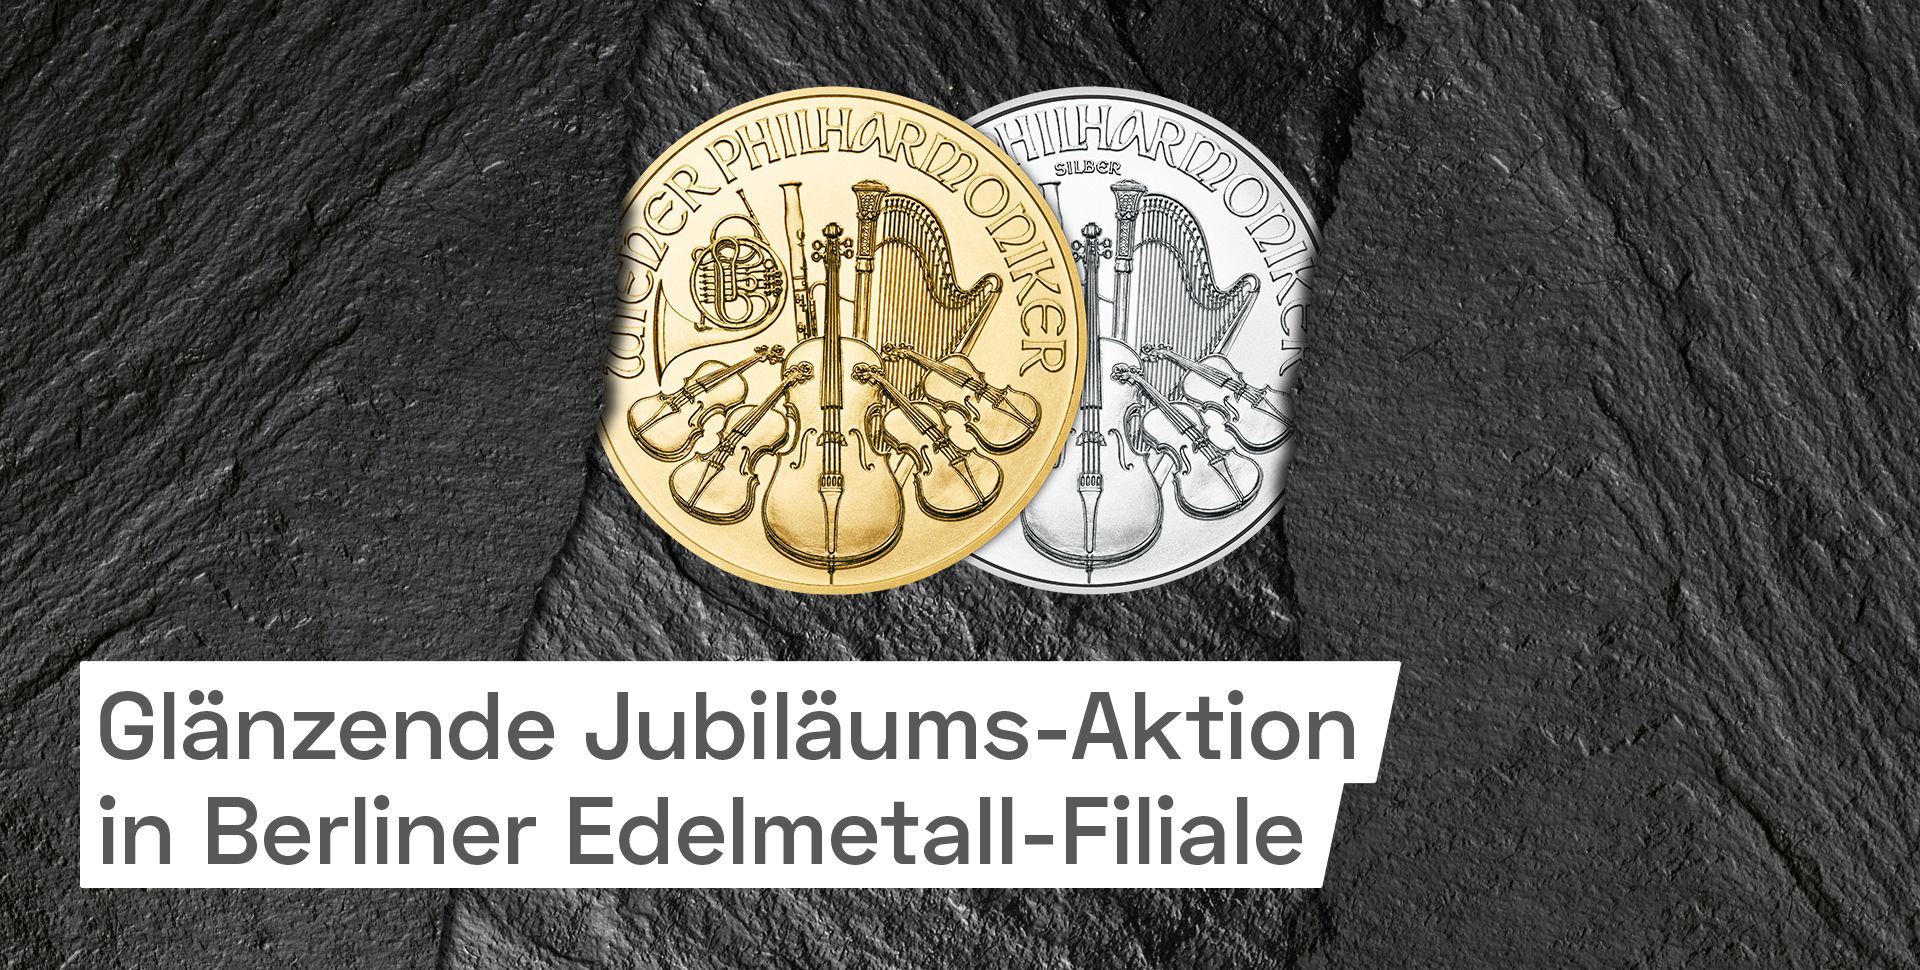 Glänzende Geburtstags-Aktion der Berliner Edelmetall-Filiale: Gold kaufen und Silber gratis dazu erhalten